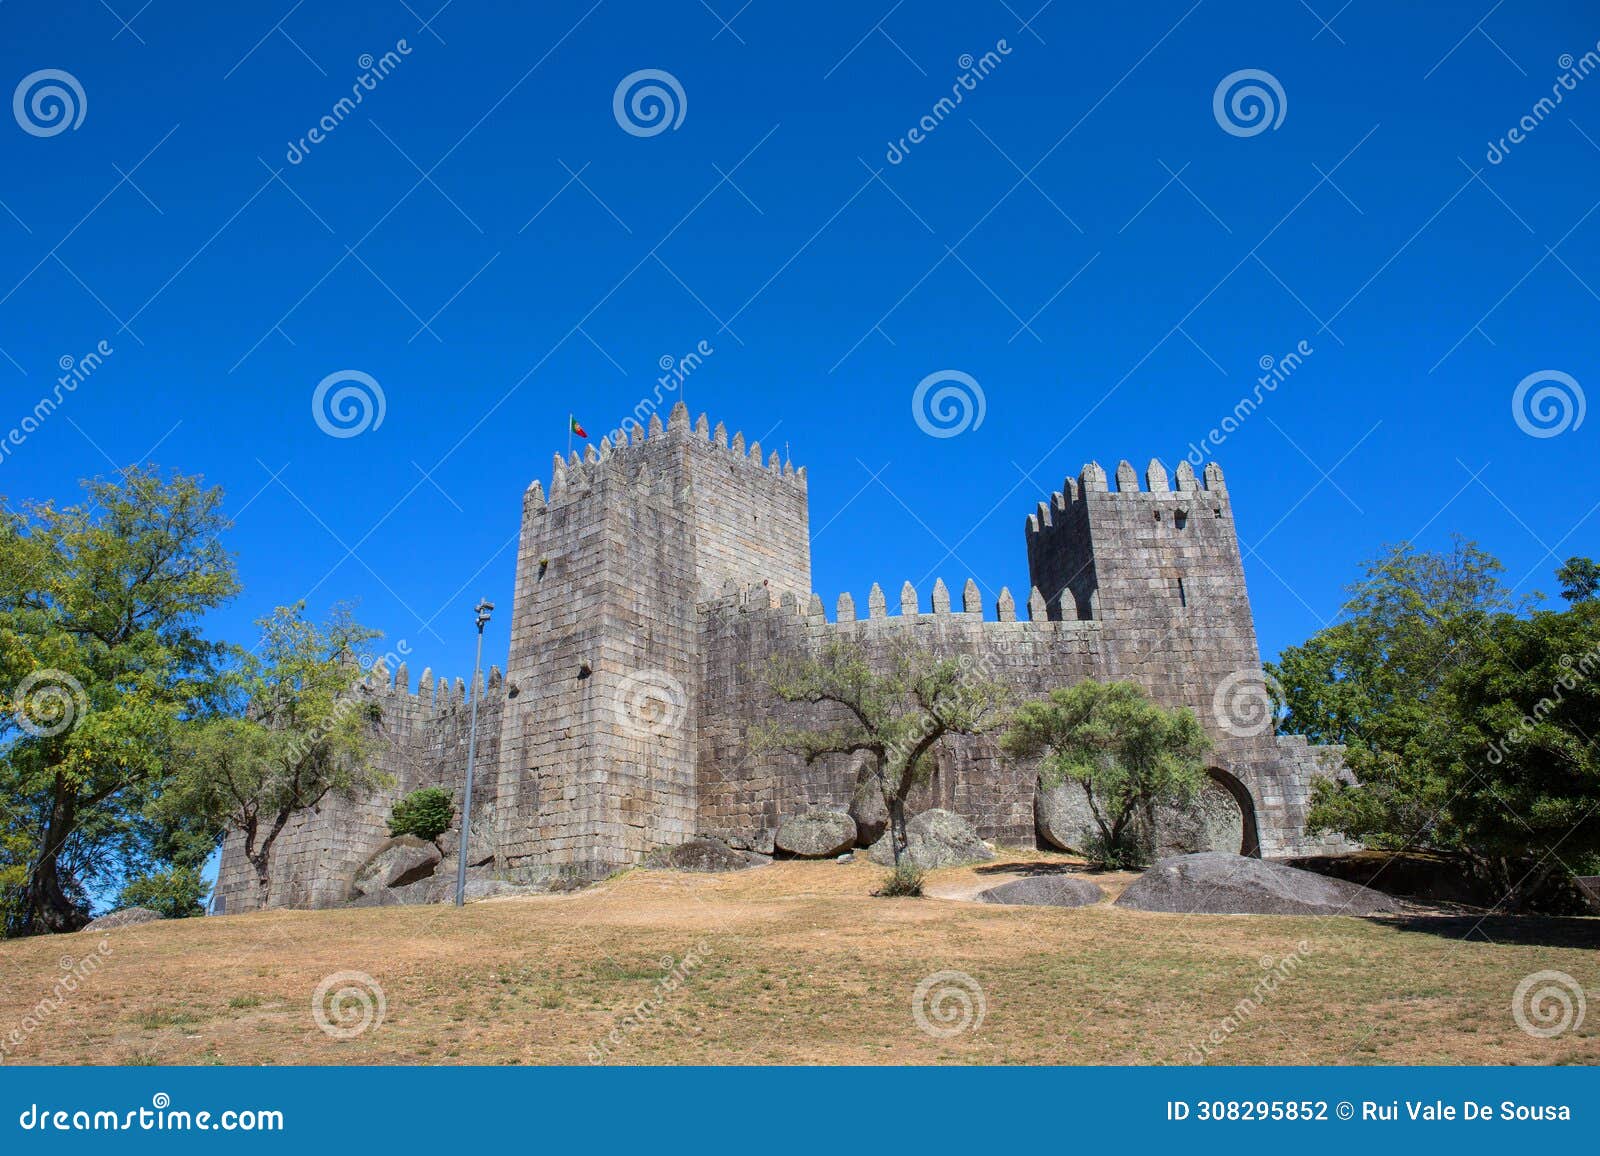 guimaraes castle in portugal